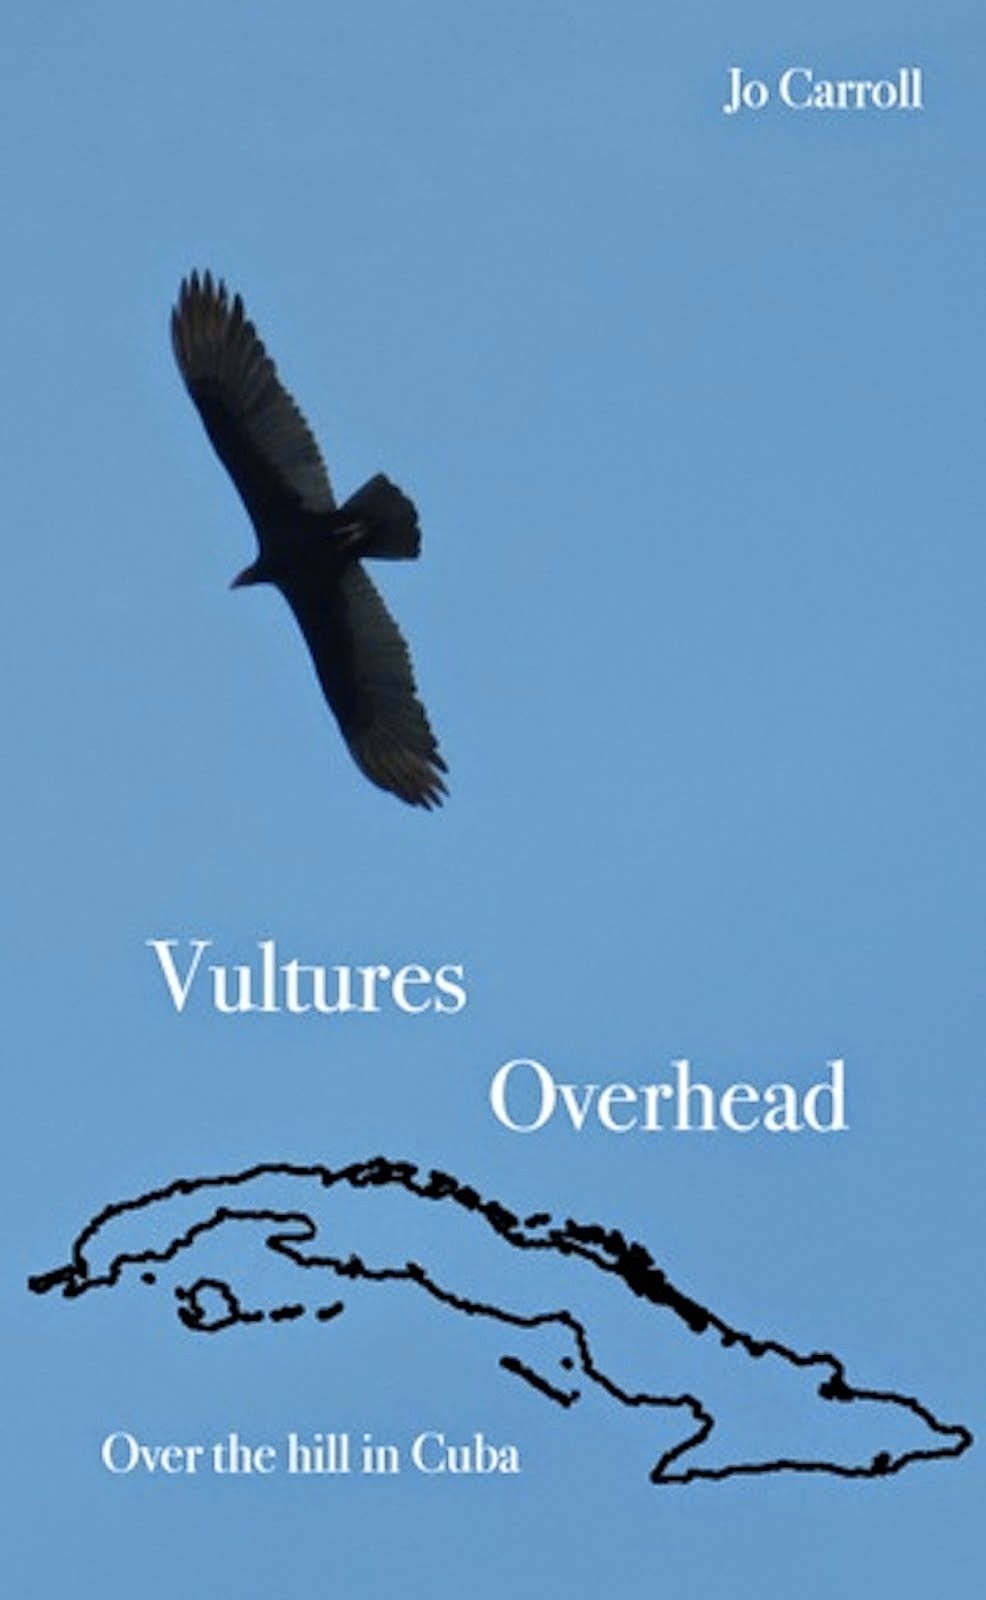 Vultures Overhead